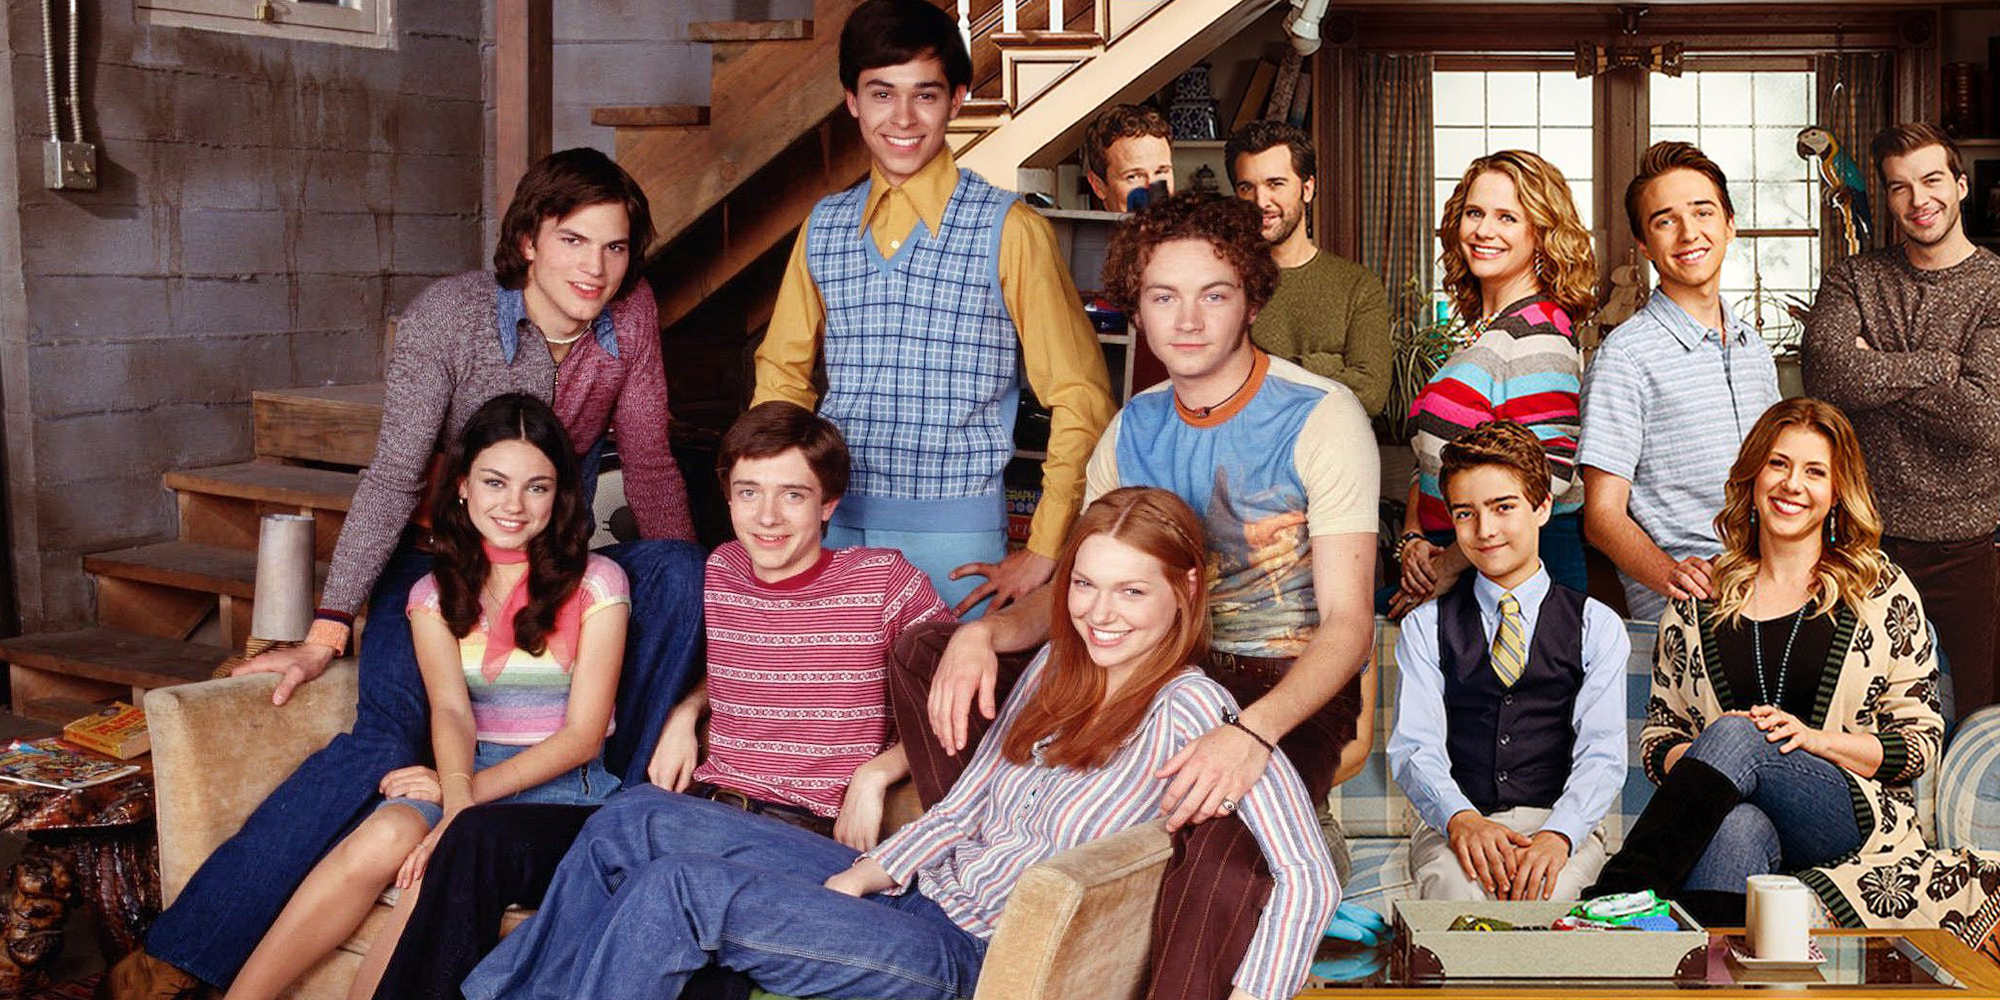 Fuller House: Tanner family nostalgia doesn't make redundant sitcom better, US television